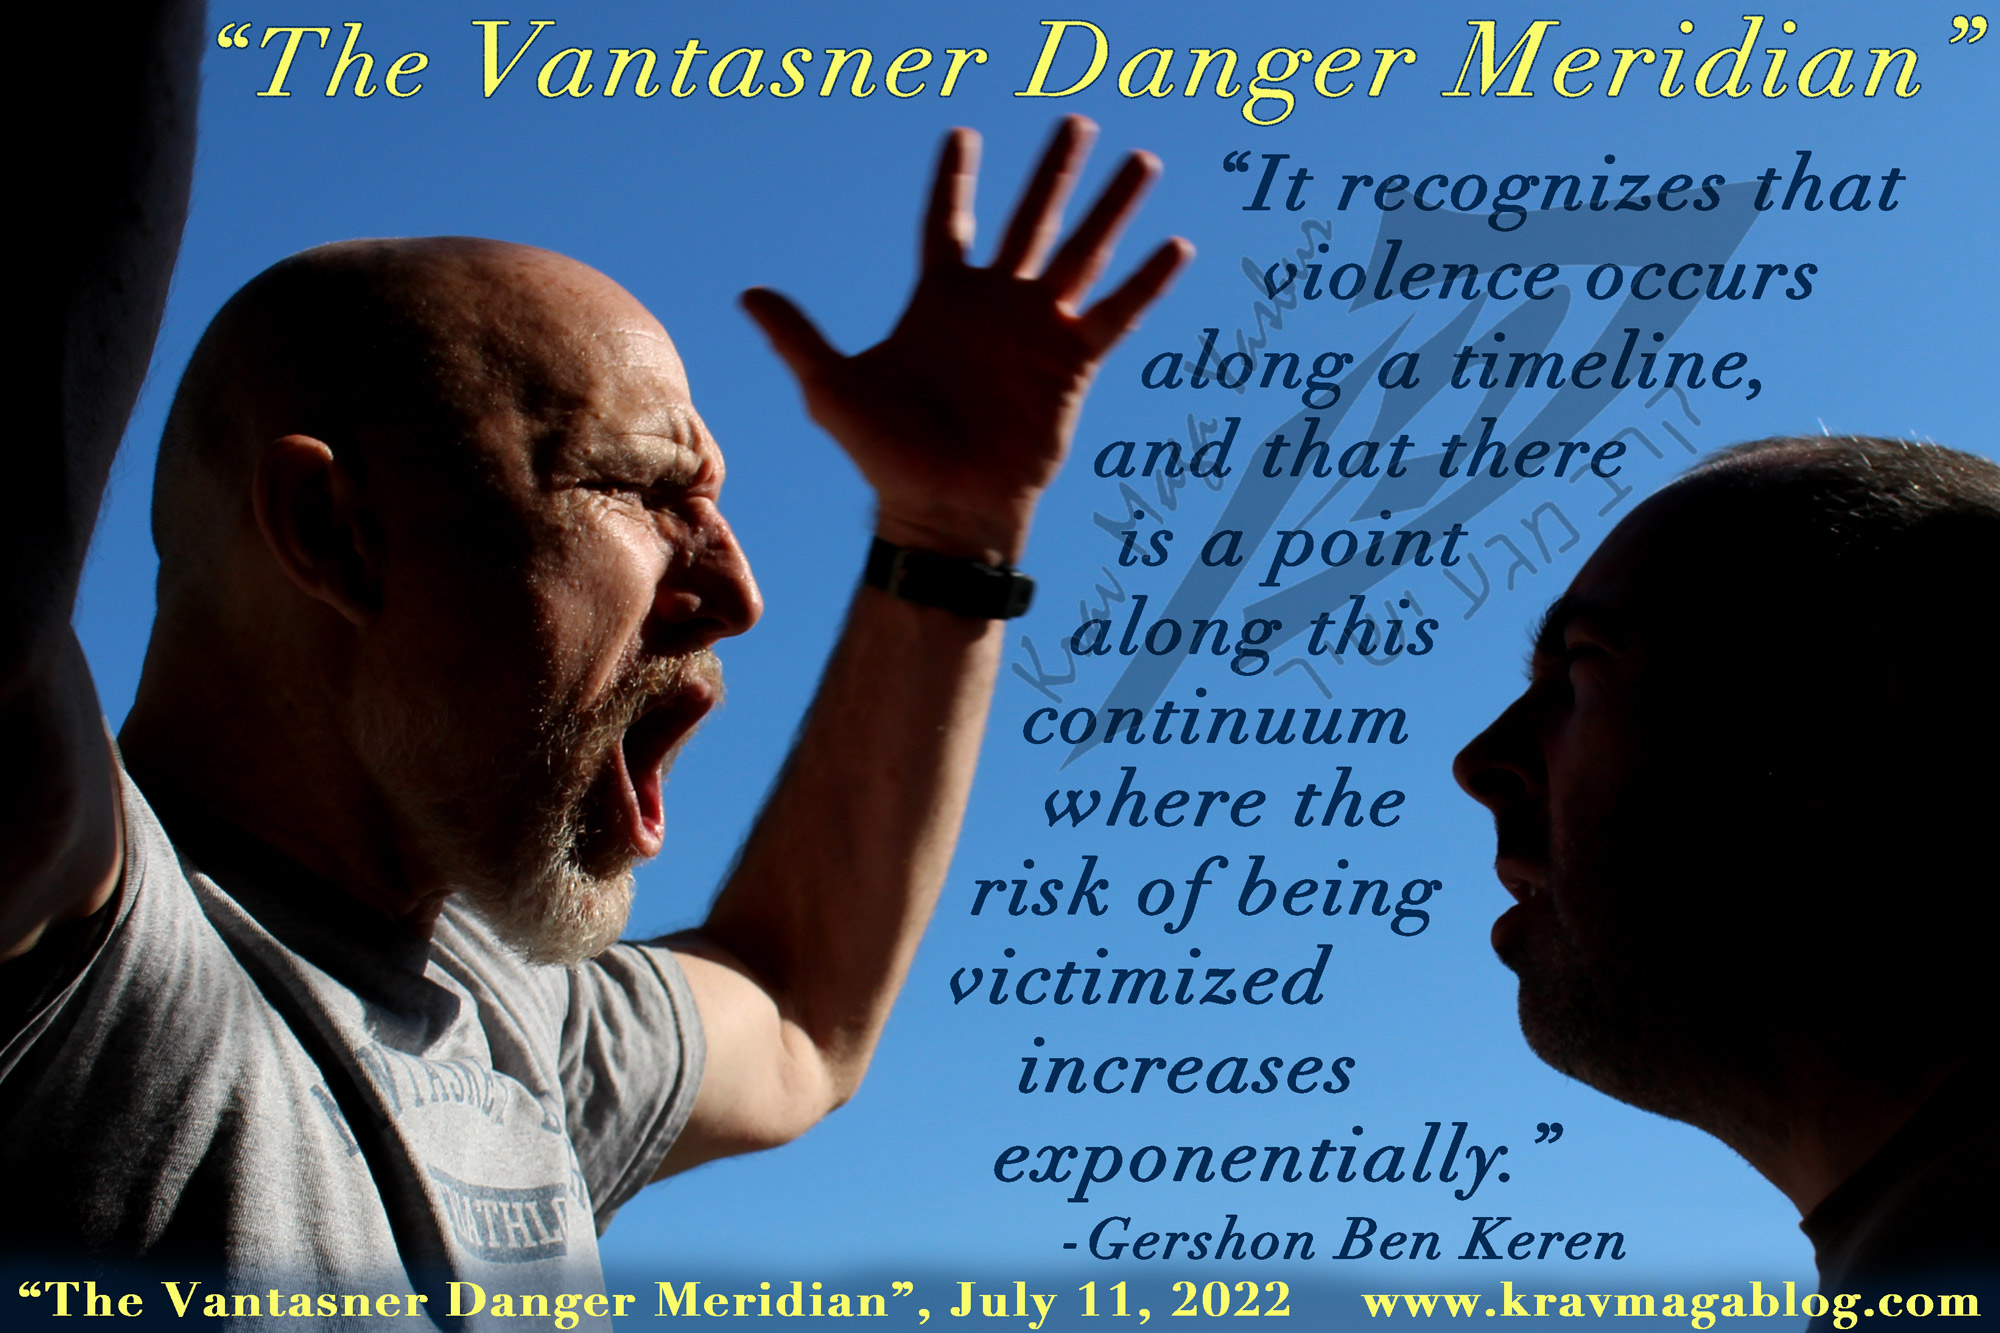 Blog About The Vantasner Danger Meridian